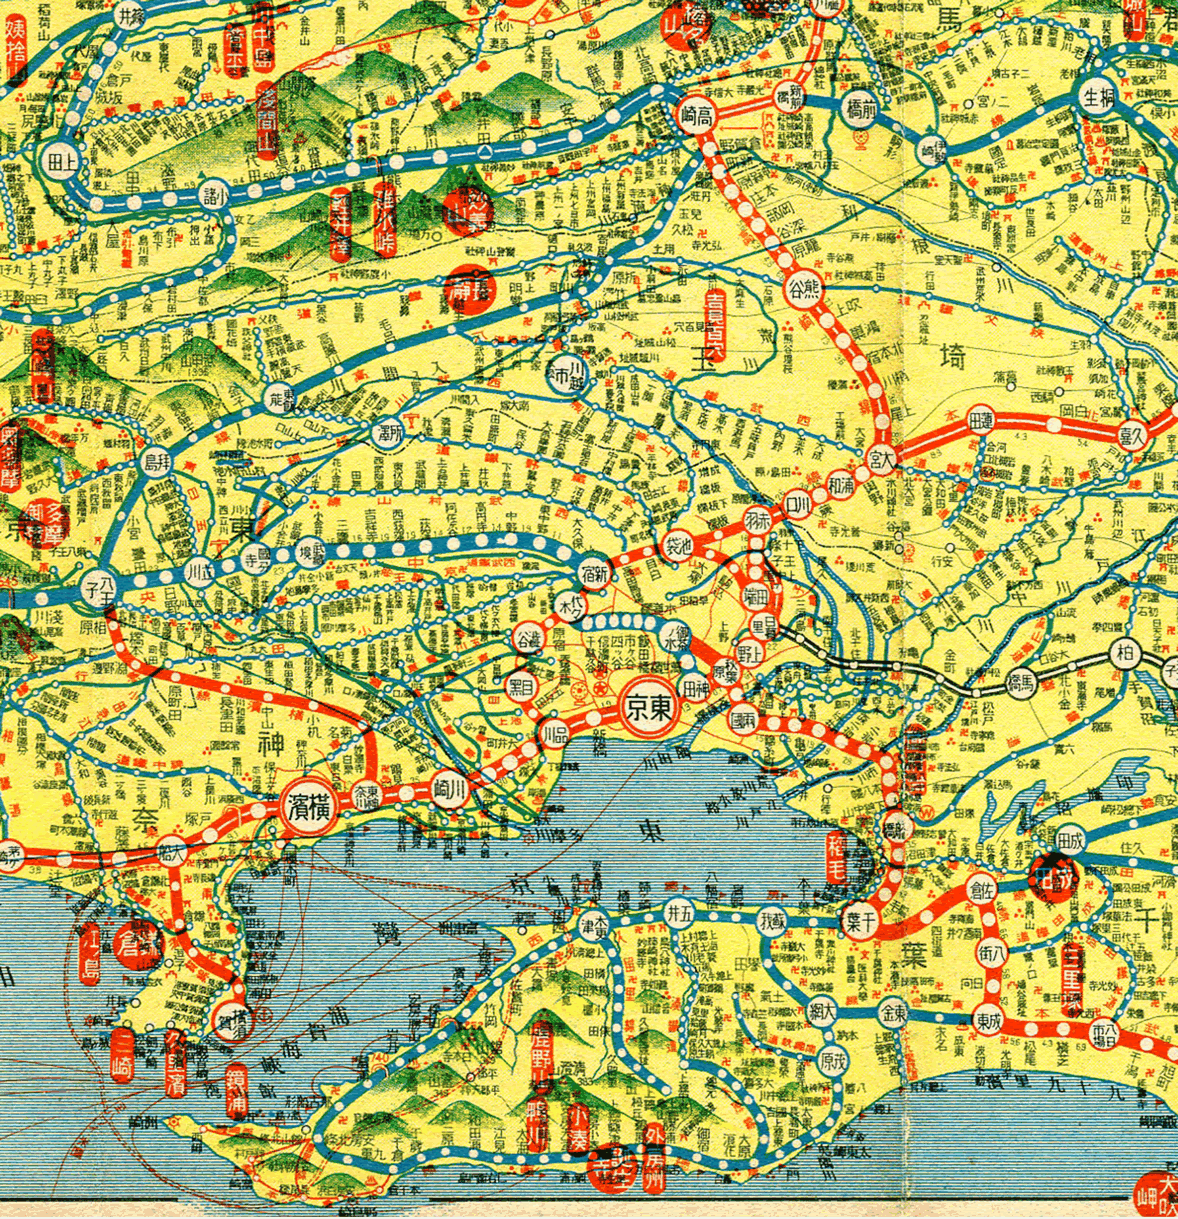 みんなの知識 ちょっと便利帳 1936年 昭和11年の 日本の鉄道地図 日本の統治下にあった台湾 朝鮮半島 満州を含む